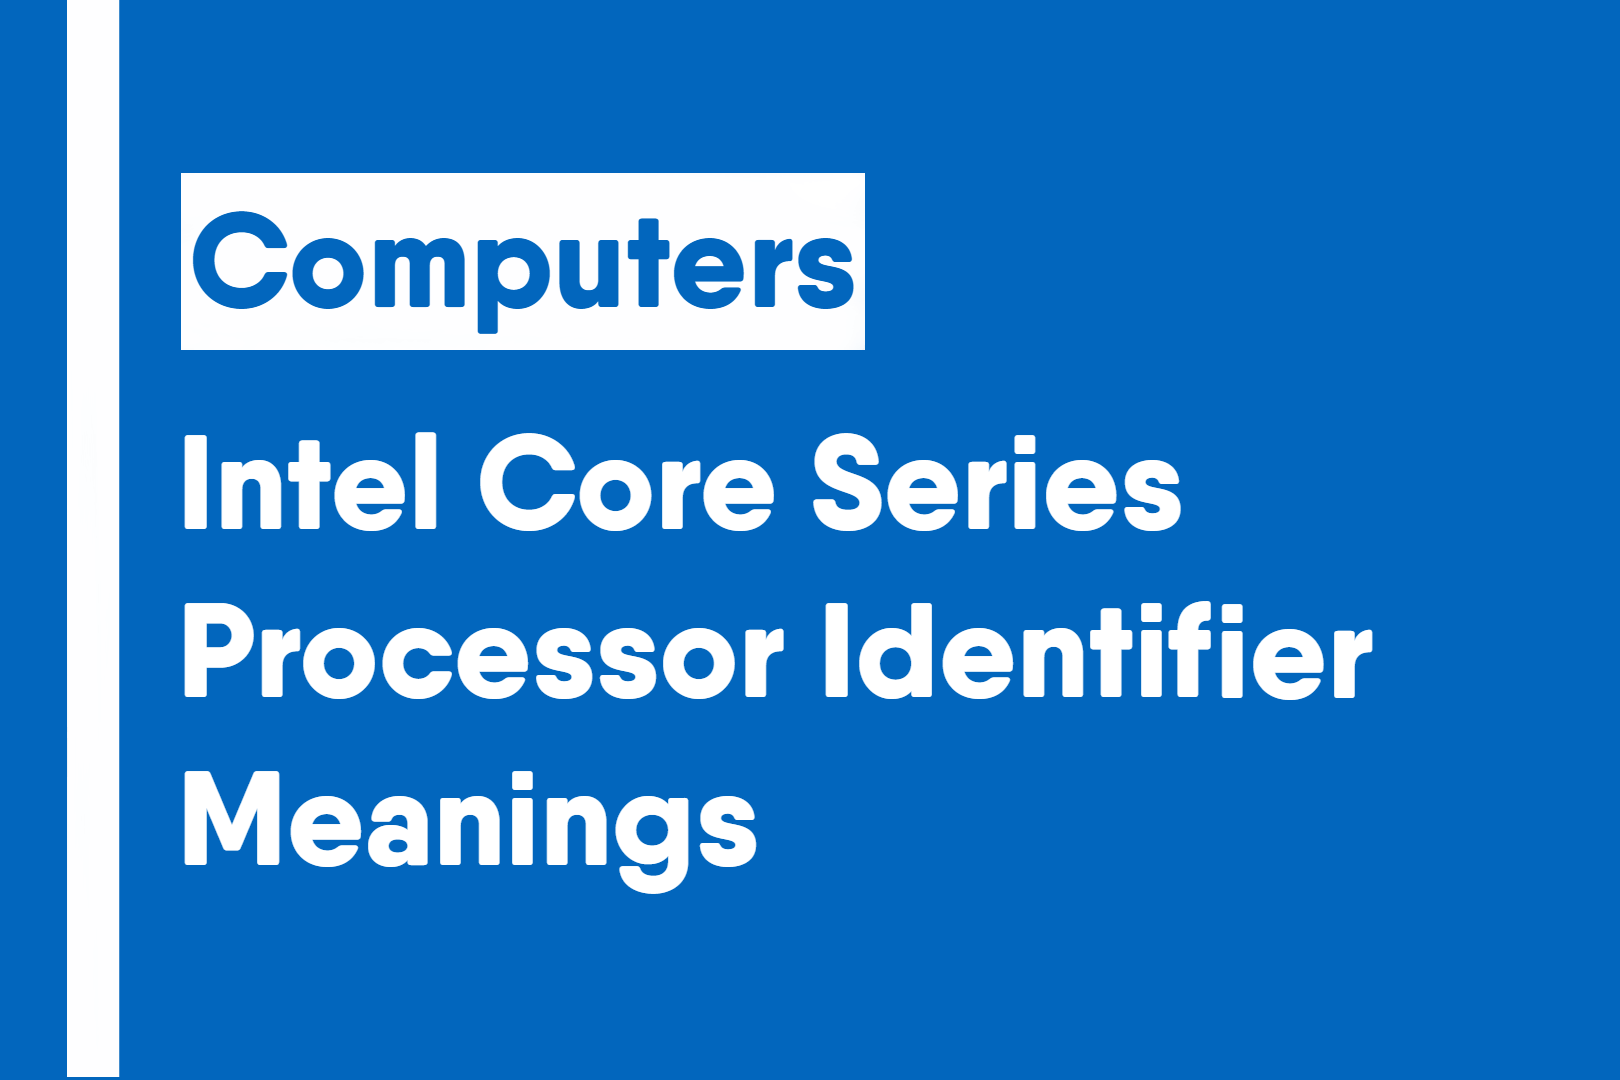 Intel Core Series Processor Identifier Meanings